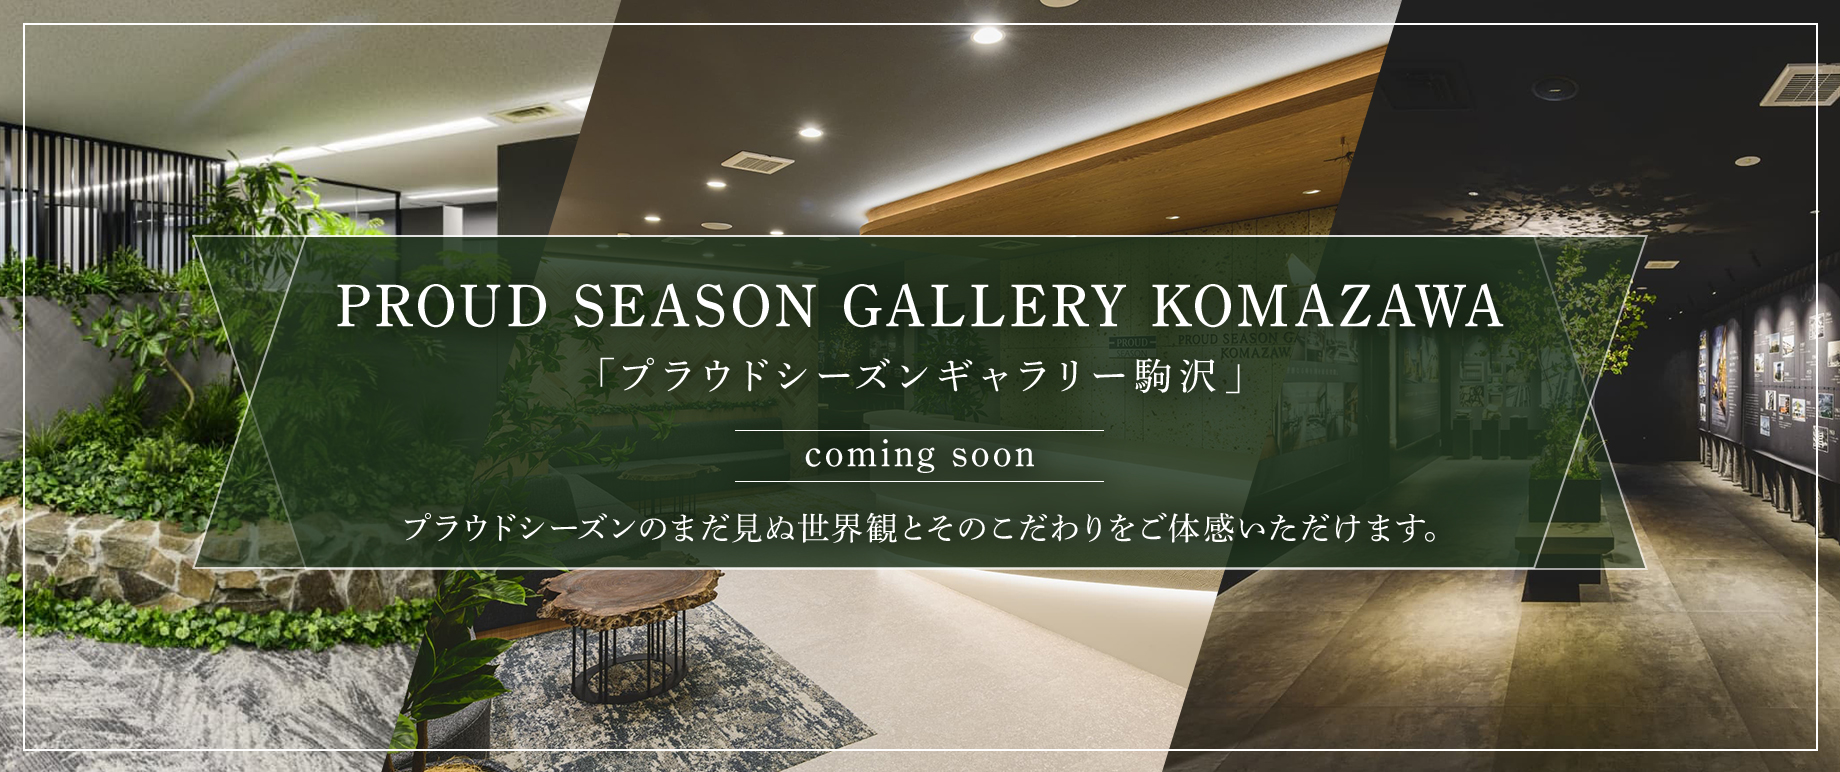 駒沢ギャラリー coming soon